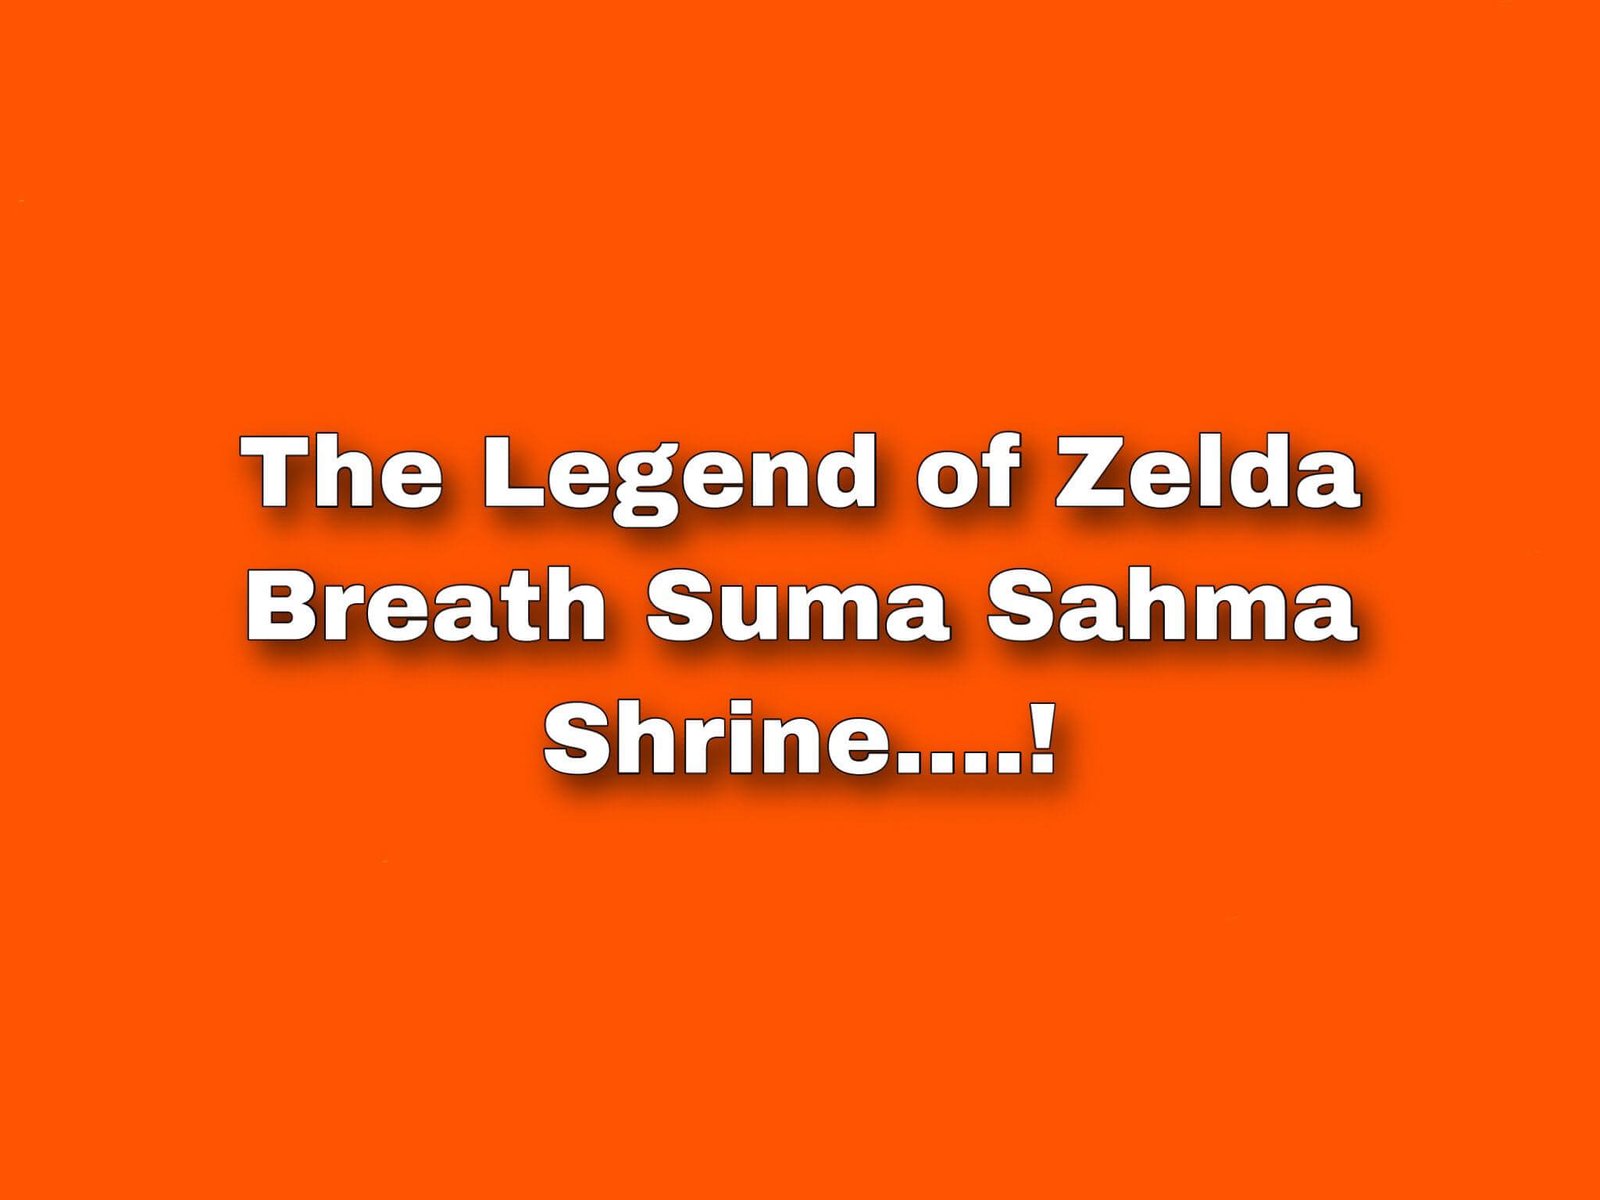 https://shyoz.com/wp-content/uploads/2021/02/The-Legend-of-Zelda-Suma-Sahma-Shrine..jpg